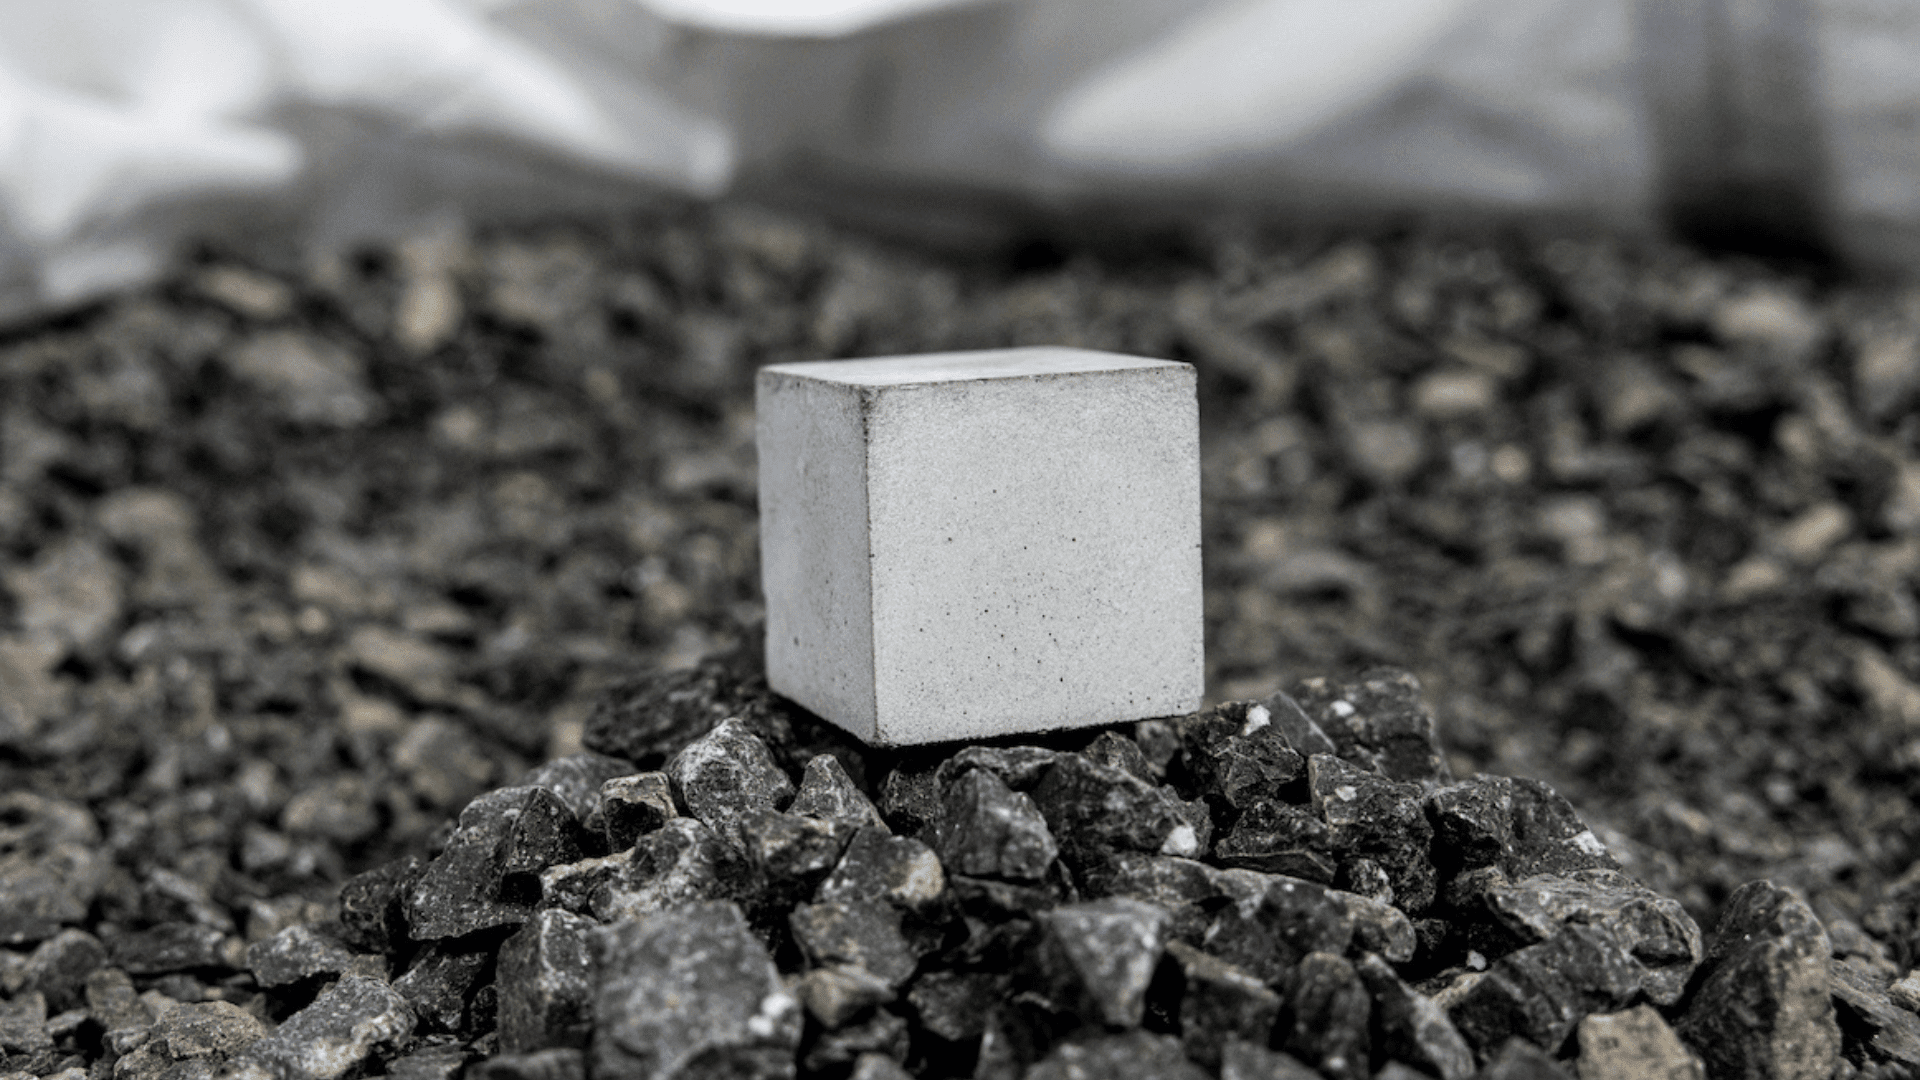 A mortar cube composed of cement made through Brimstone’s process. (Jose Romero:Brimstone)